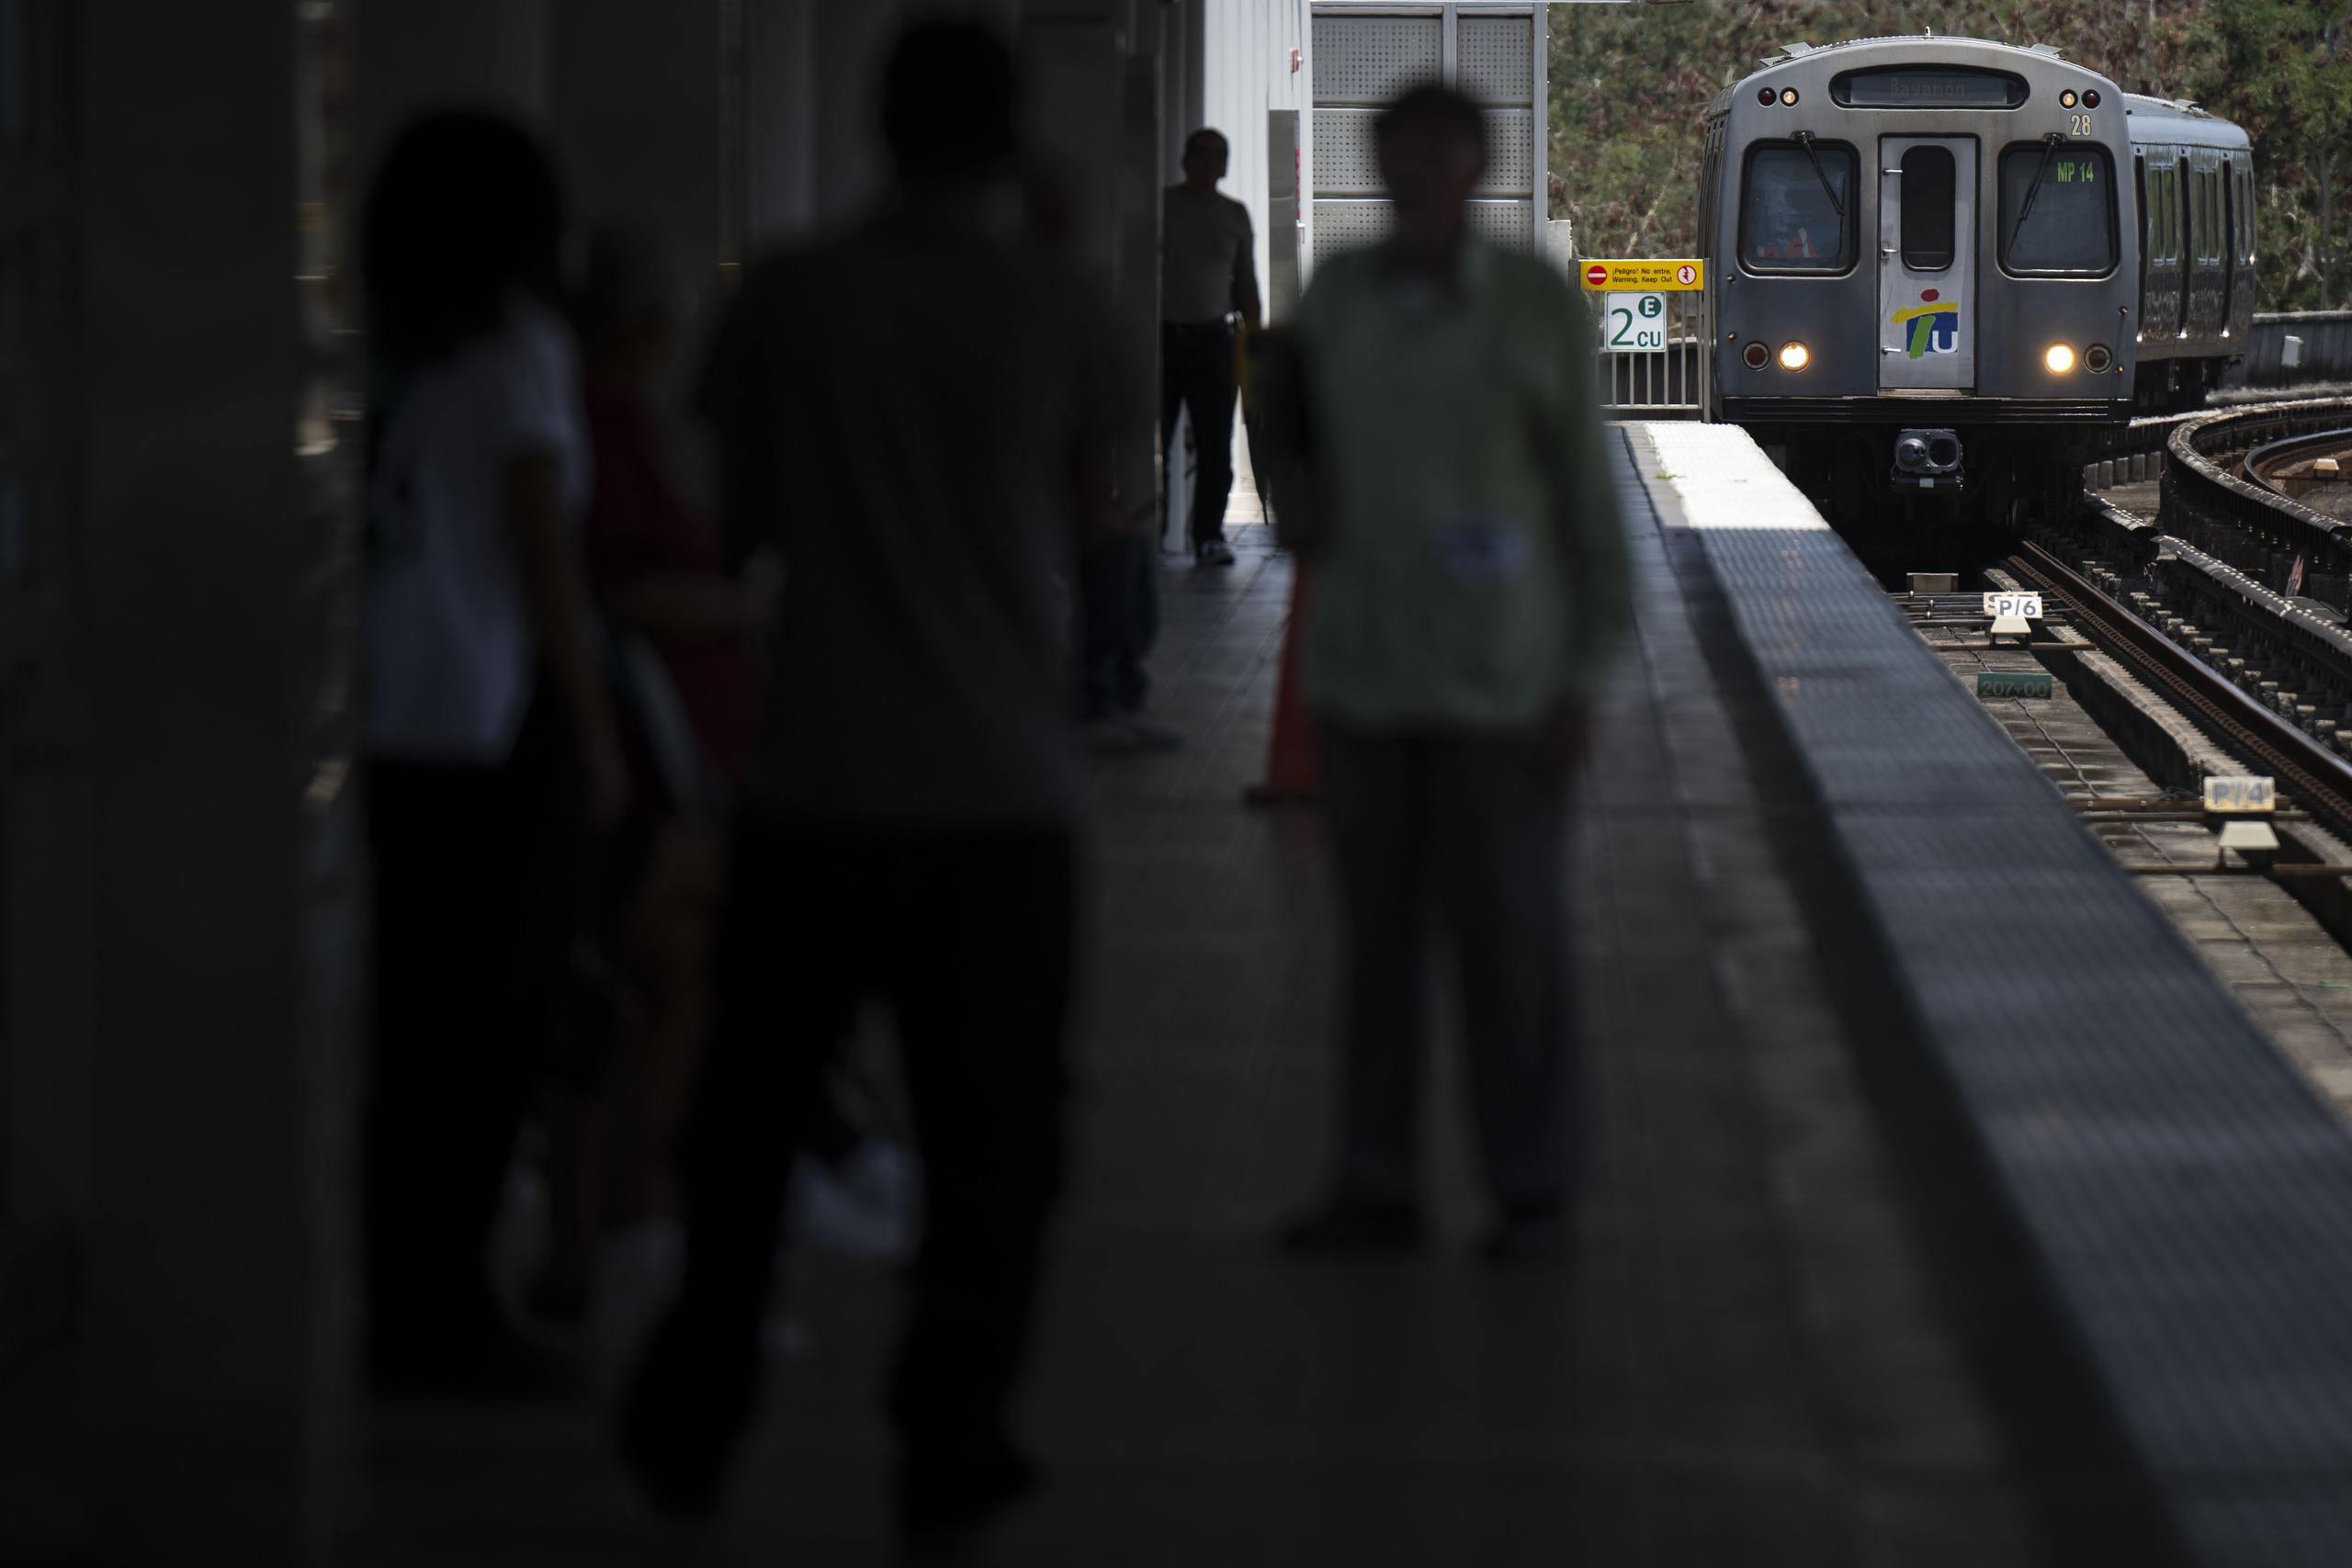 Según indicó Josué Menéndez, director ejecutivo de ATI, en el uso específico del Tren Urbano el aumento ha sido de un 42% en los primeros 27 días del pasado mes de marzo.